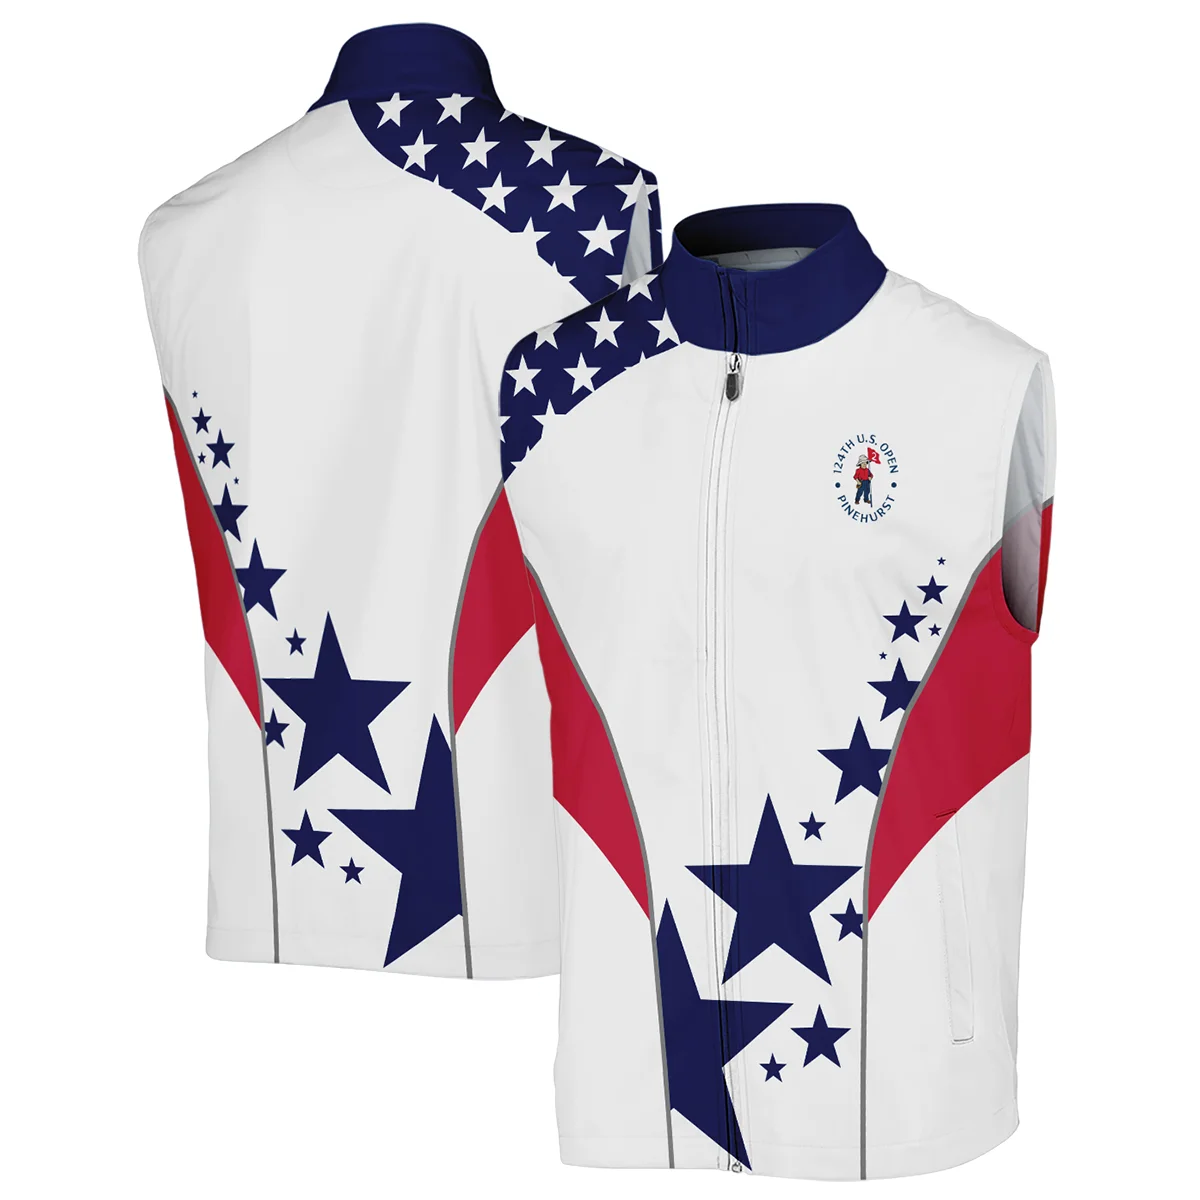 124th U.S. Open Pinehurst Titleist Stars US Flag White Blue Mandarin collar Quater-Zip Long Sleeve